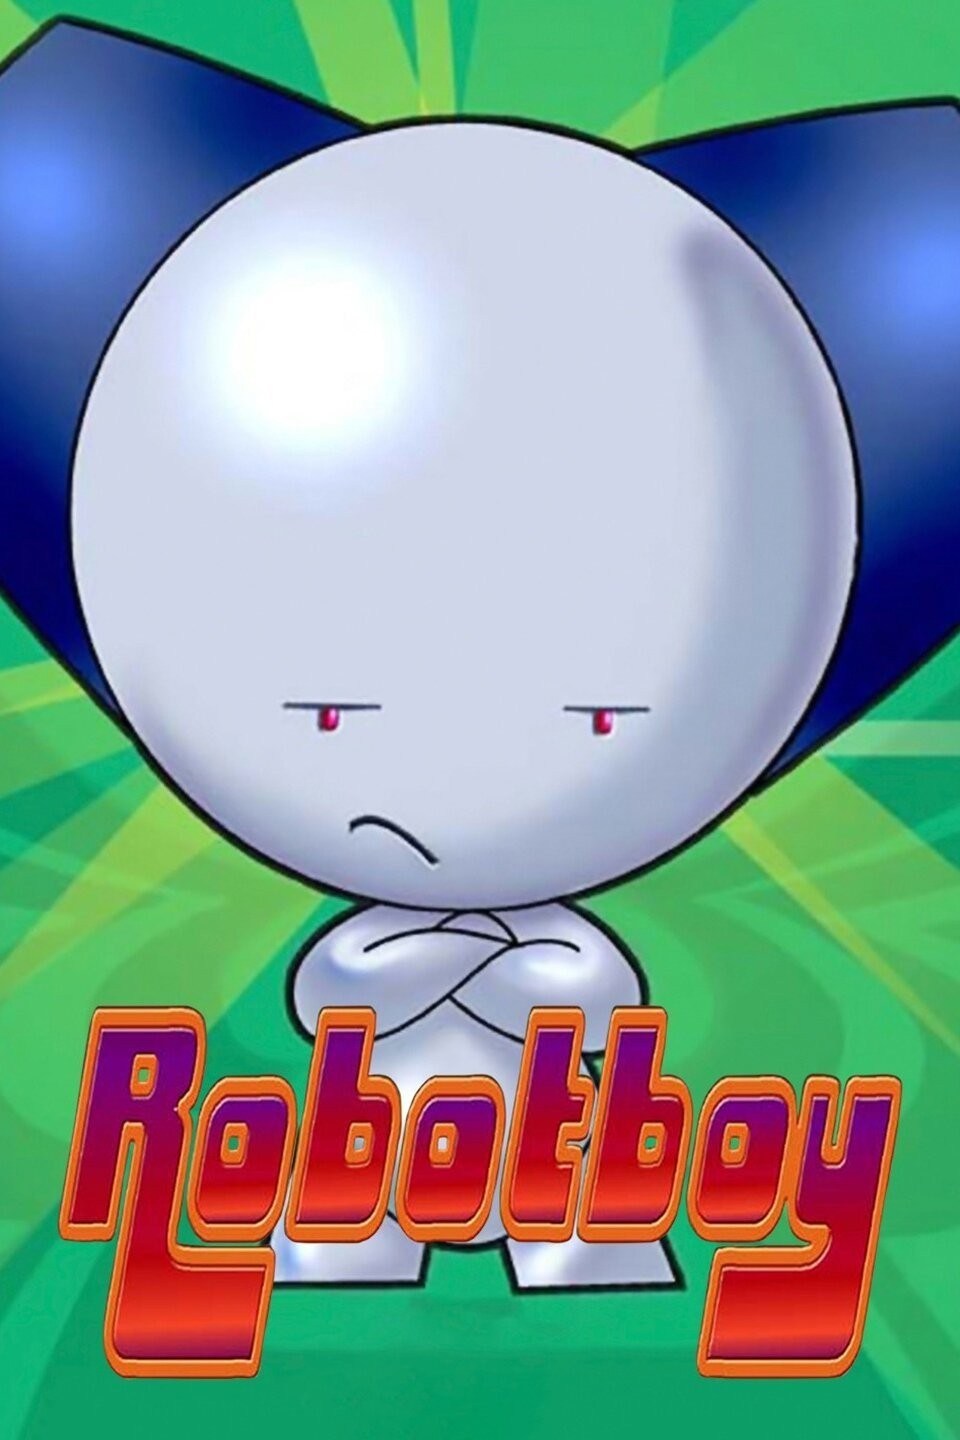 Robotboy, Clammadon Rising, The Sleepover